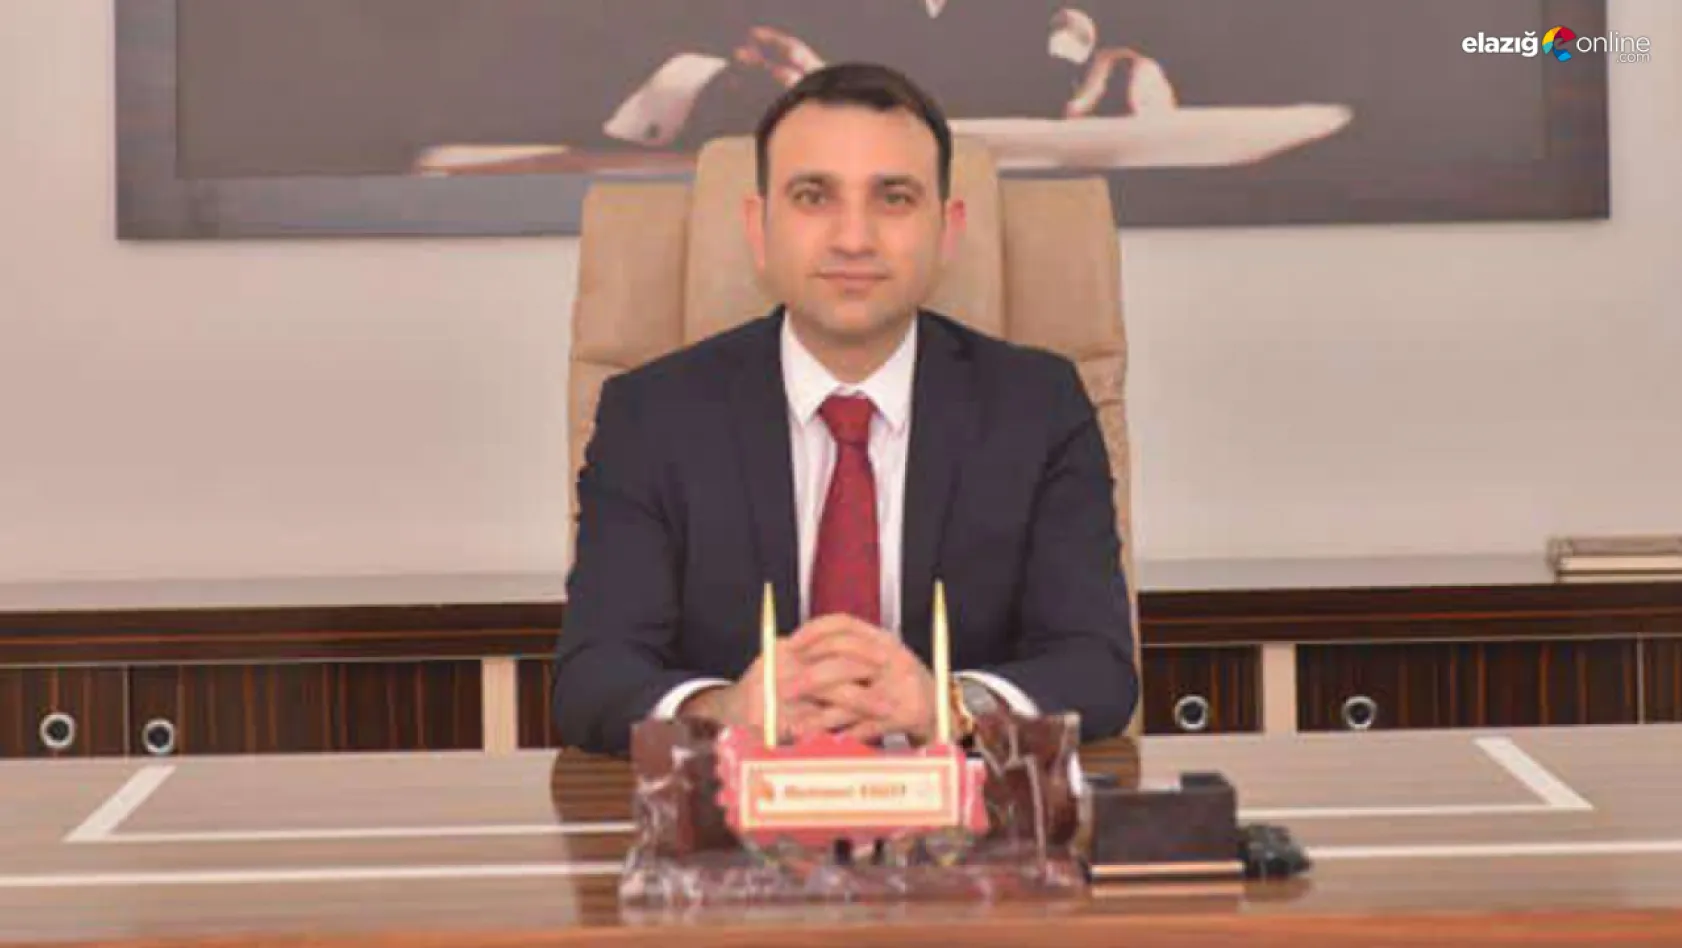 İl Milli Eğitim Müdürü Yiğit'ten açıklama! İşte Elazığ'daki okulların son durumu